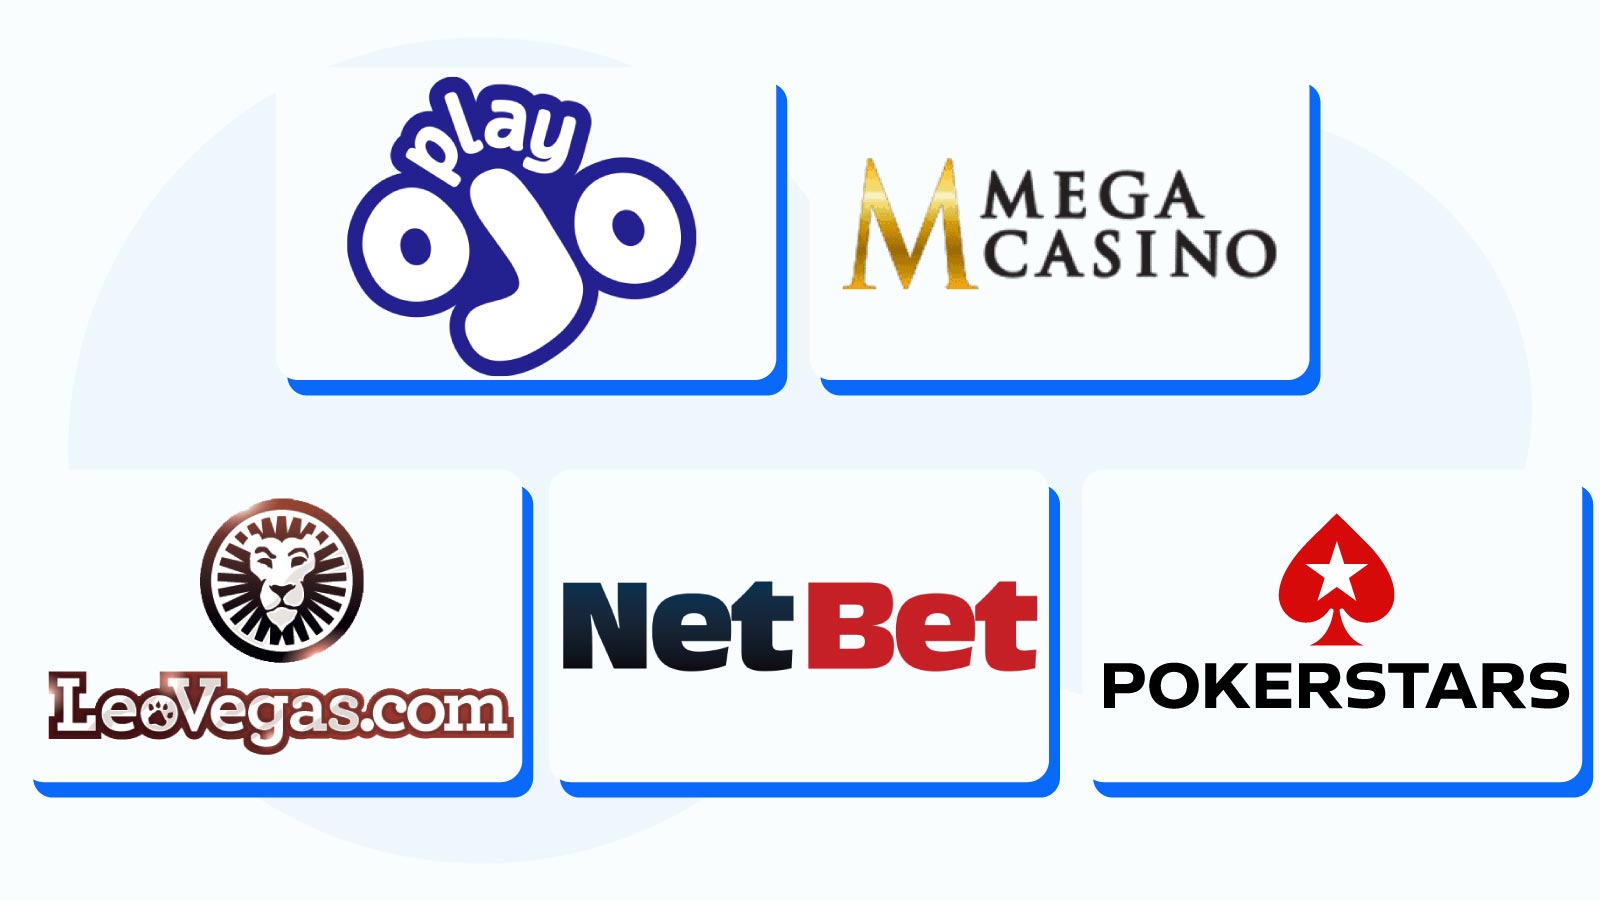 Best Quickspin Casinos